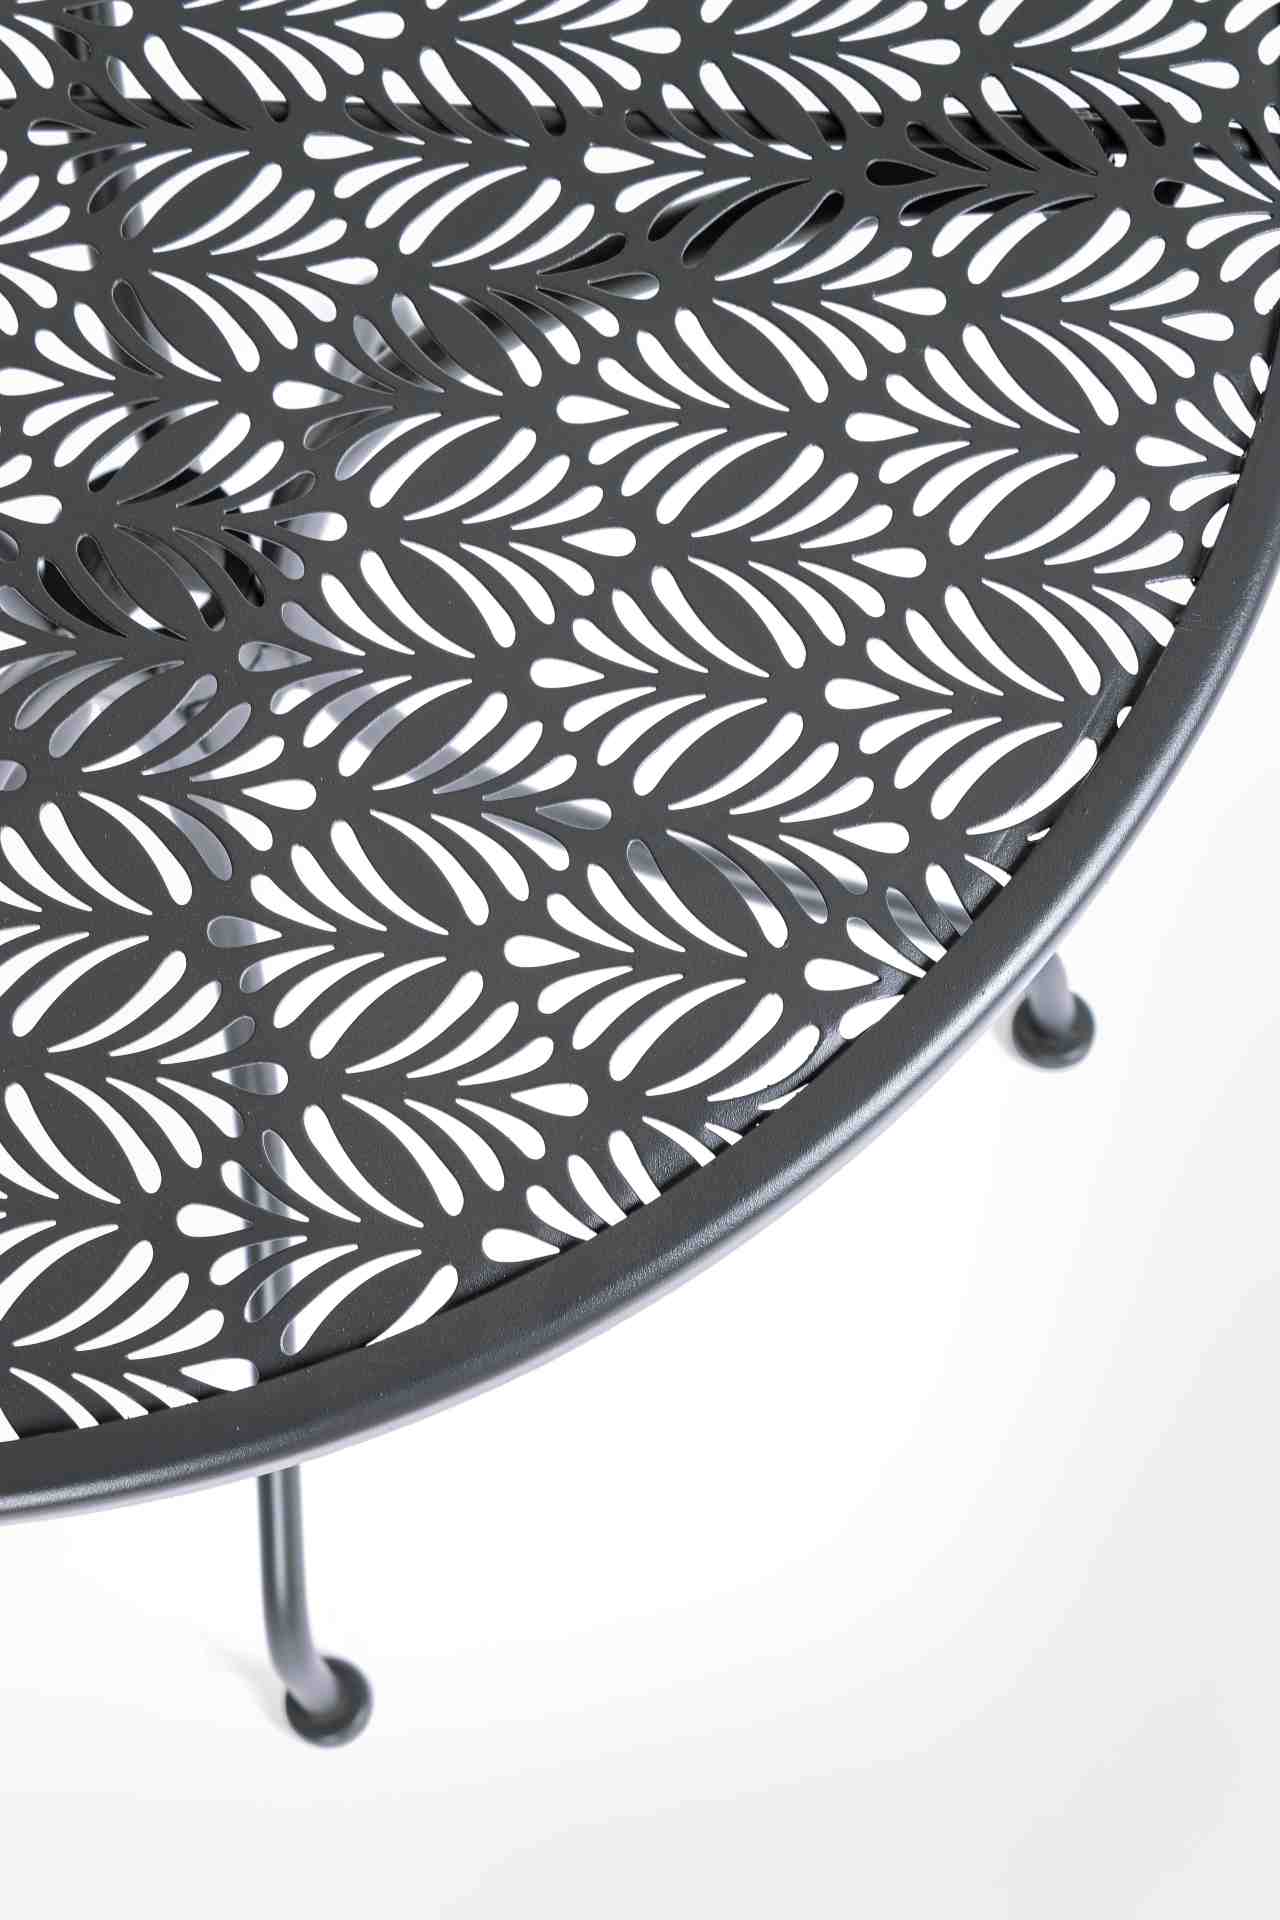 Der Gartentisch Lizette überzeugt mit seinem klassischen Design. Gefertigt wurde er aus Aluminium, welches einen Anthrazit Farbton besitzt. Das Gestell ist aus auch Aluminium und hat eine Anthrazit Farbe. Der Tisch verfügt über einen Durchmesser von 60 cm